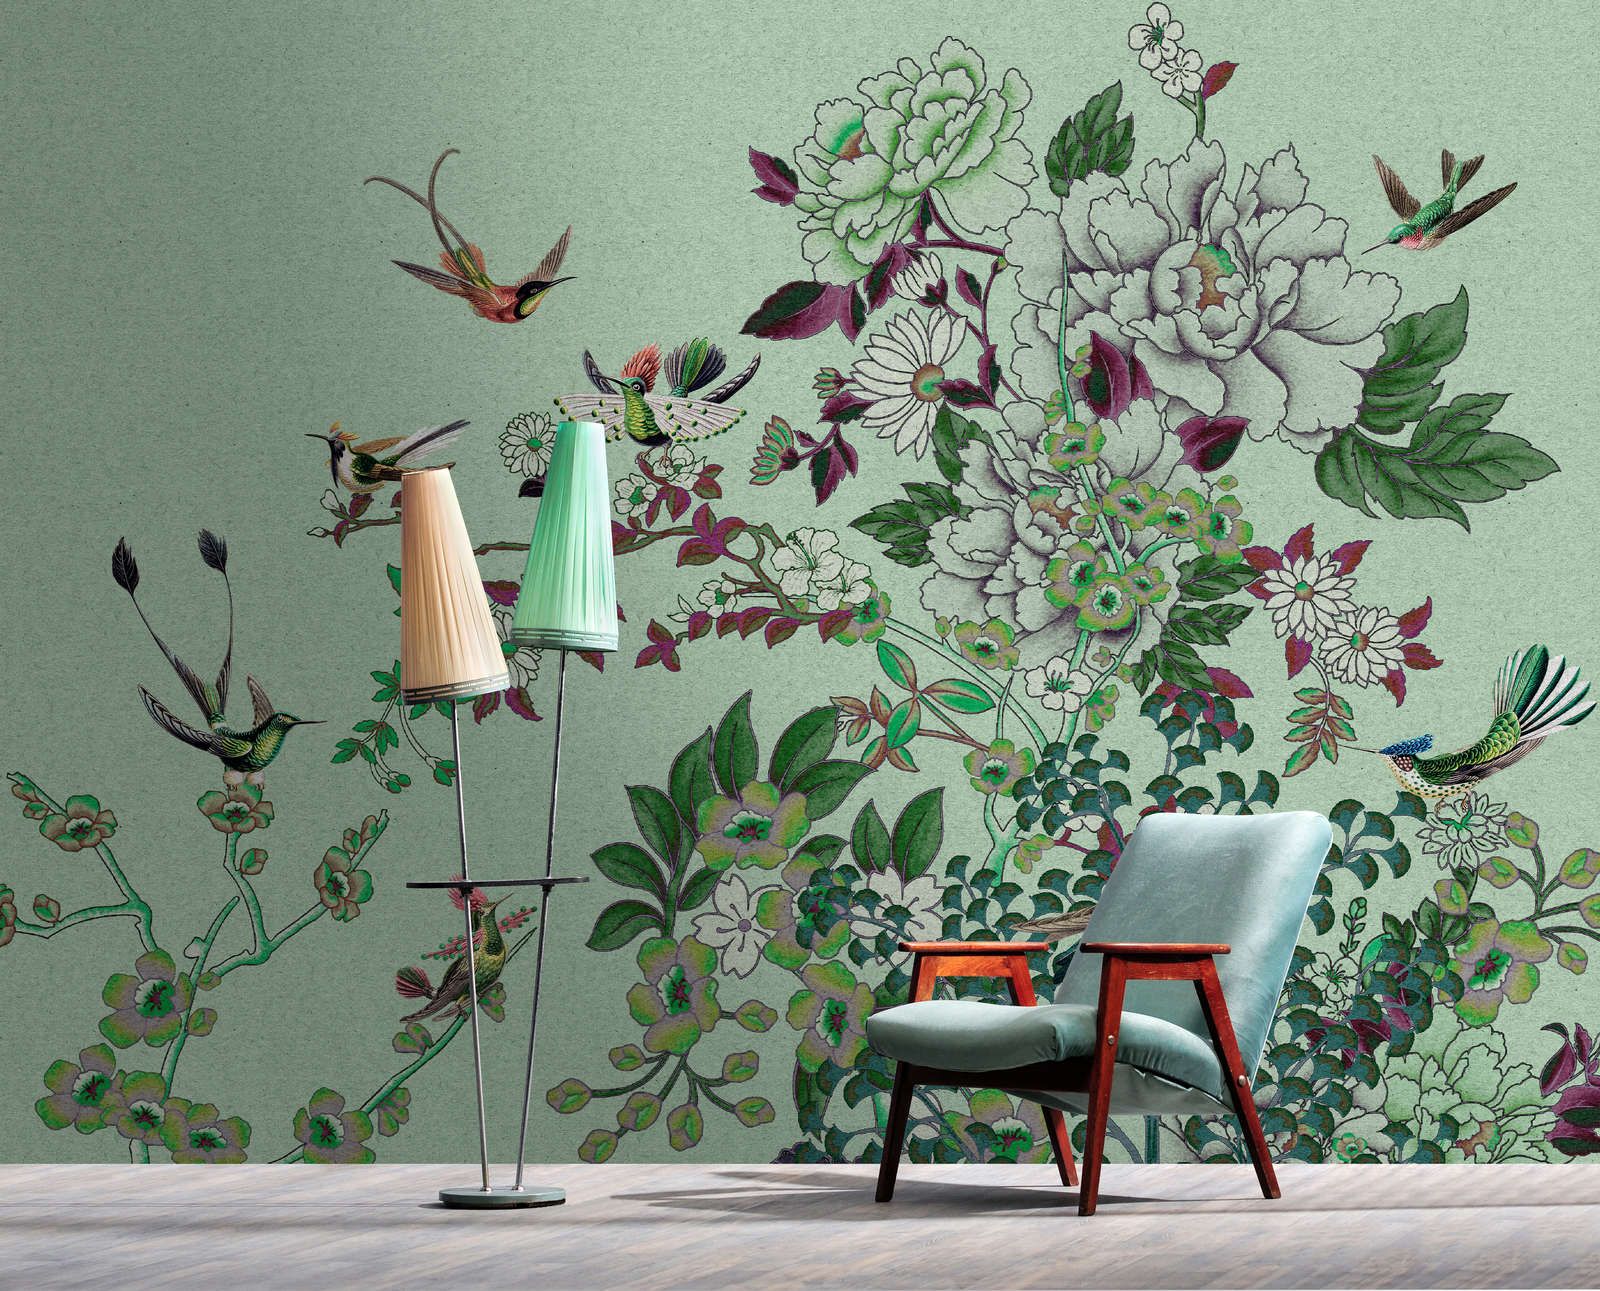             Fototapete »madras 1« - Grünes Blüten-Motiv mit Vögeln auf Kraftpapier-Struktur – Glattes, leicht perlmutt-schimmerndes Vlies
        